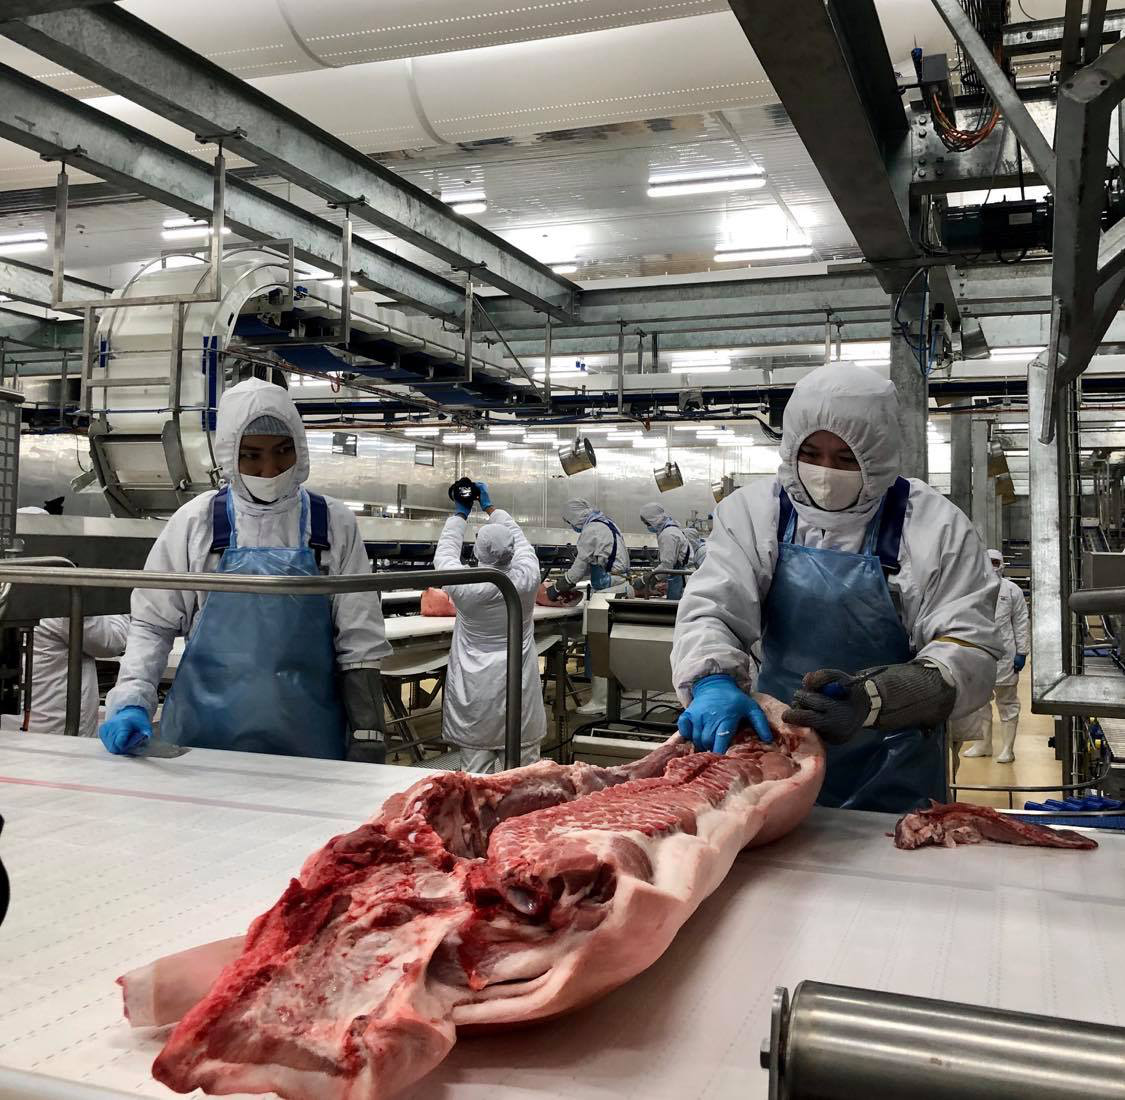 Bên trong nhà máy lạnh 4 độ C chế biến thịt mát, vốn đầu tư 1.800 tỷ sắp khánh thành - Ảnh 3.